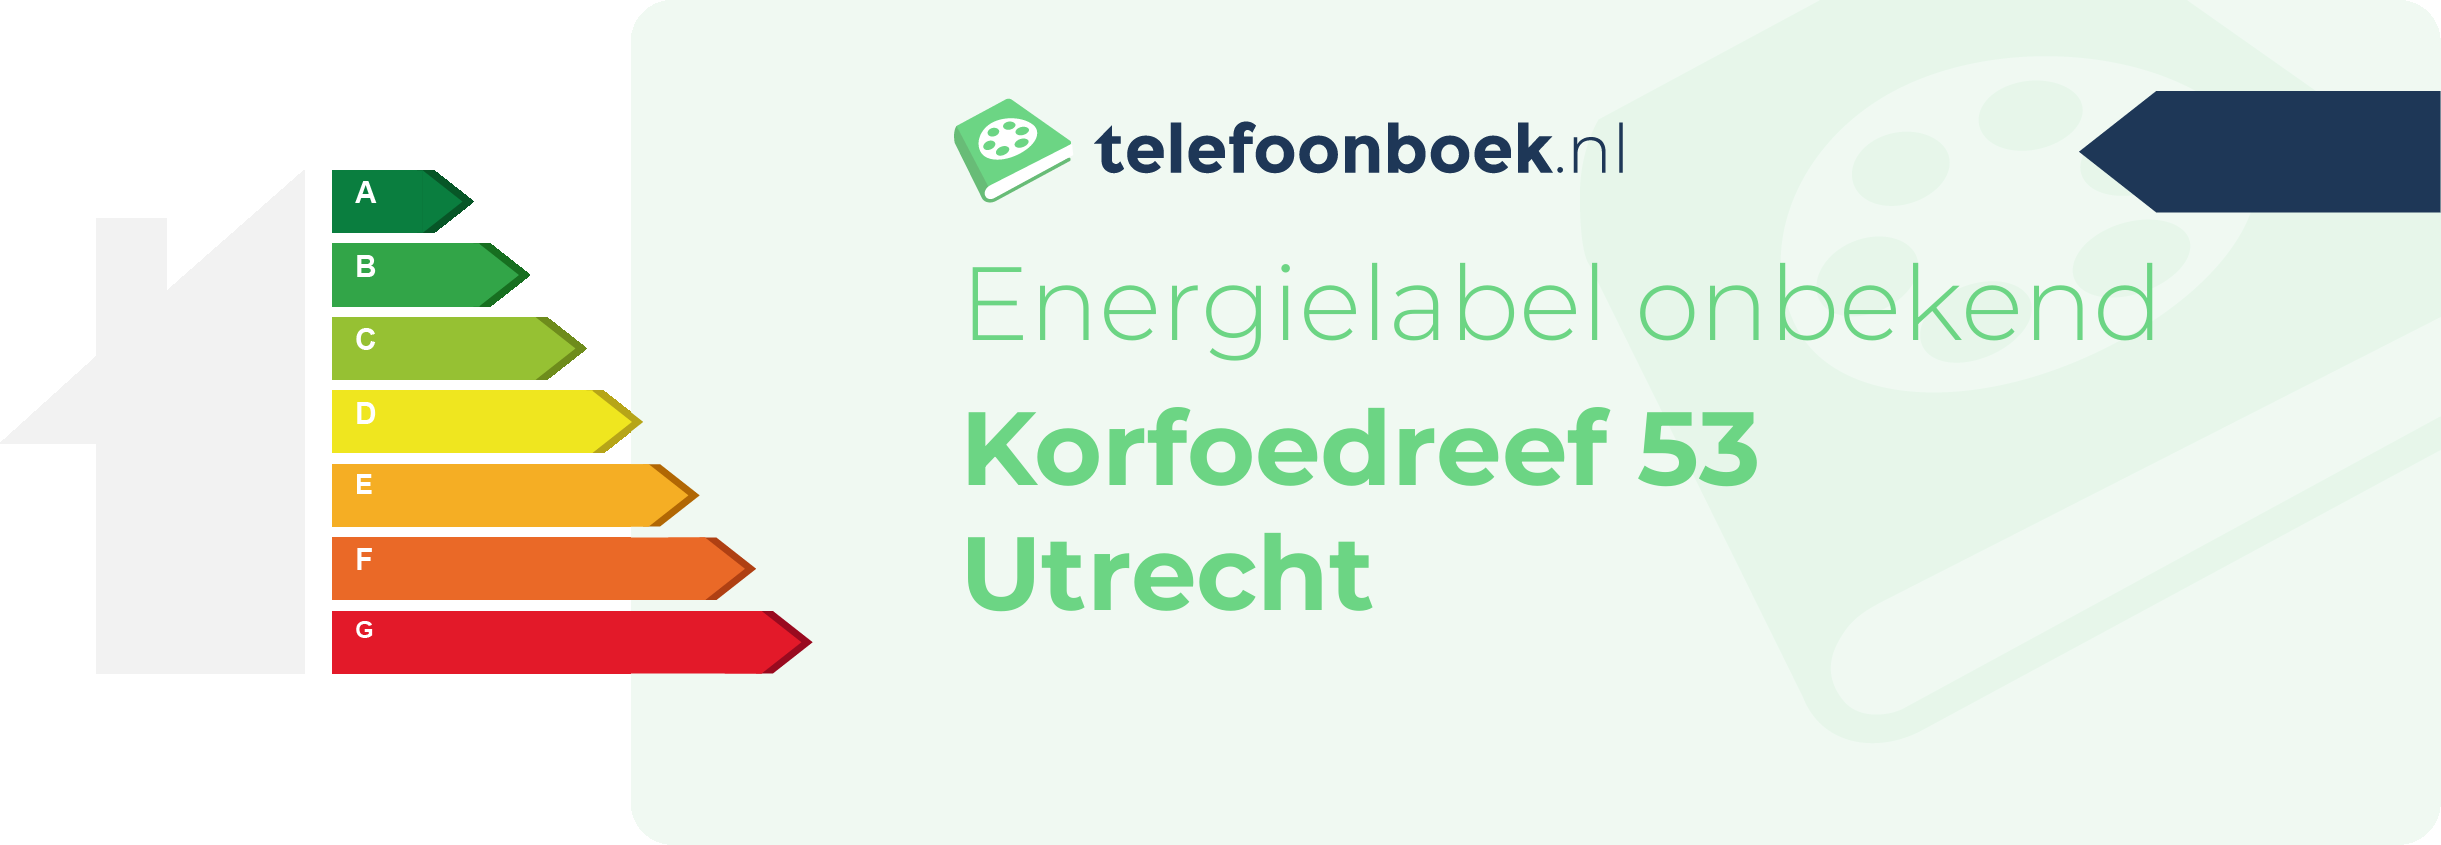 Energielabel Korfoedreef 53 Utrecht